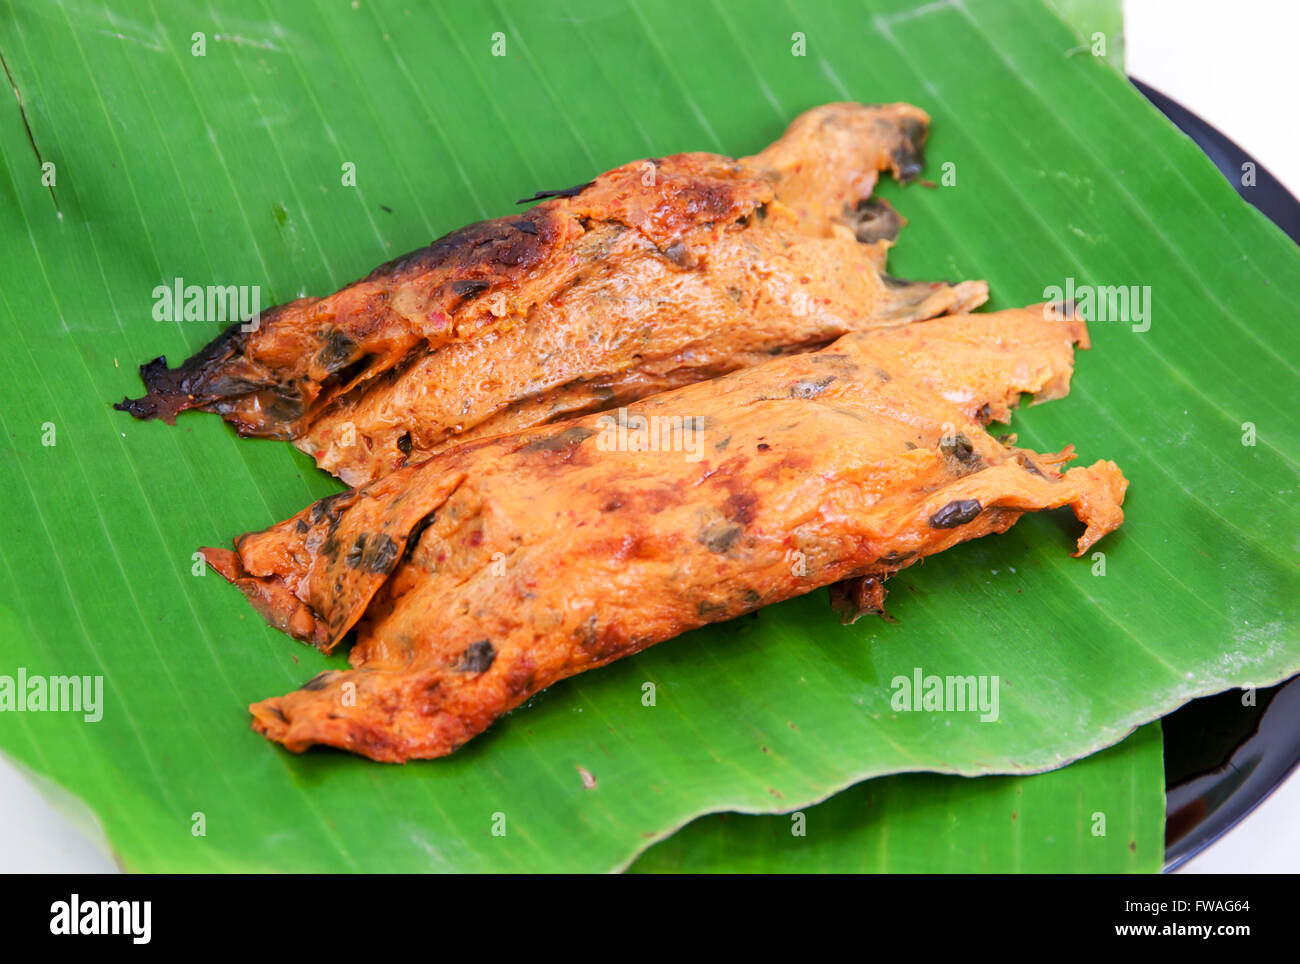 Fisch-Curry in Banane Blätter durch Hitze gegrillt auf weißem Hintergrund Stockfoto